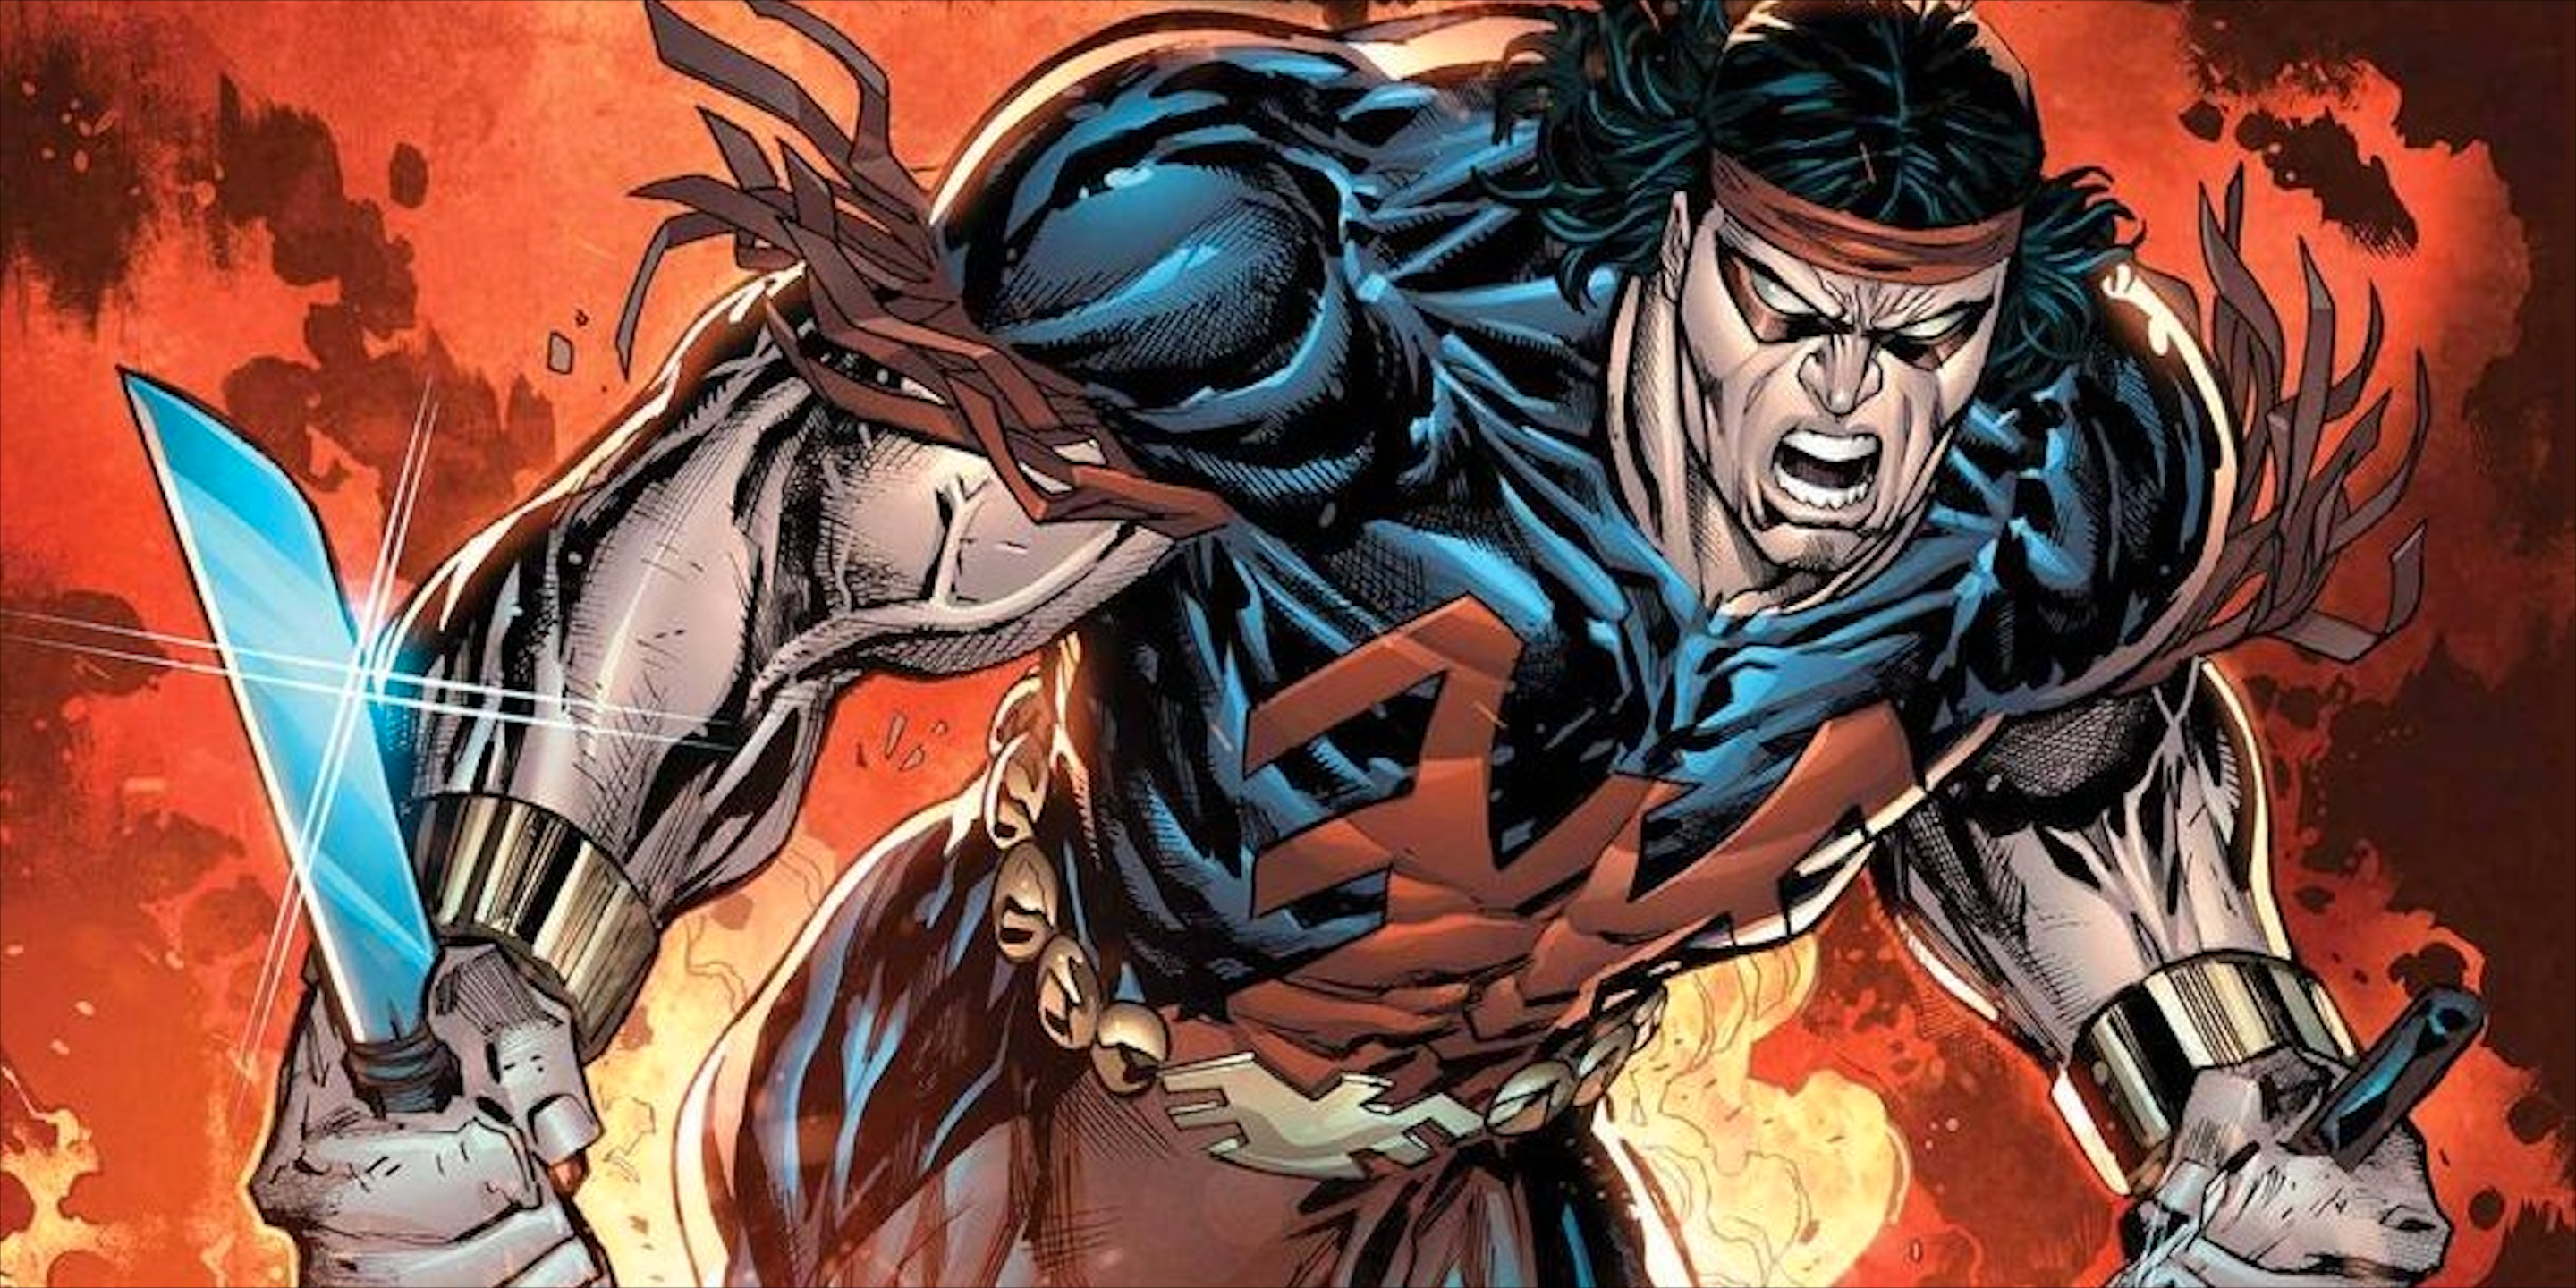 Thunderbird original de los X-Men finalmente obtiene su propio cómic de tamaño gigante